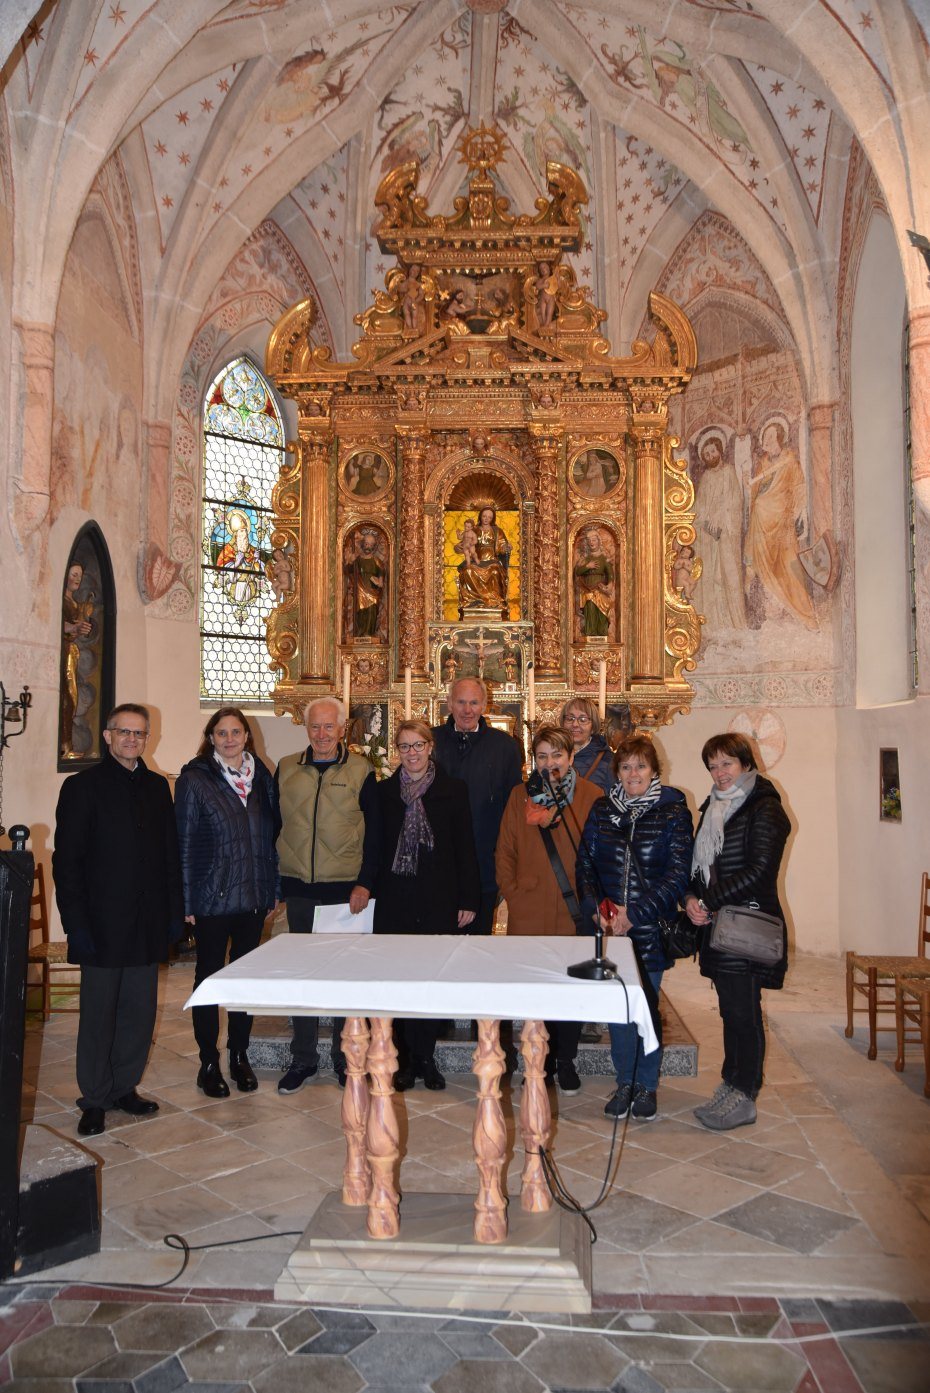 Image: Pred oltarjem v cerkvi Mariji v Grabnu. Foto: Franc Wakounig